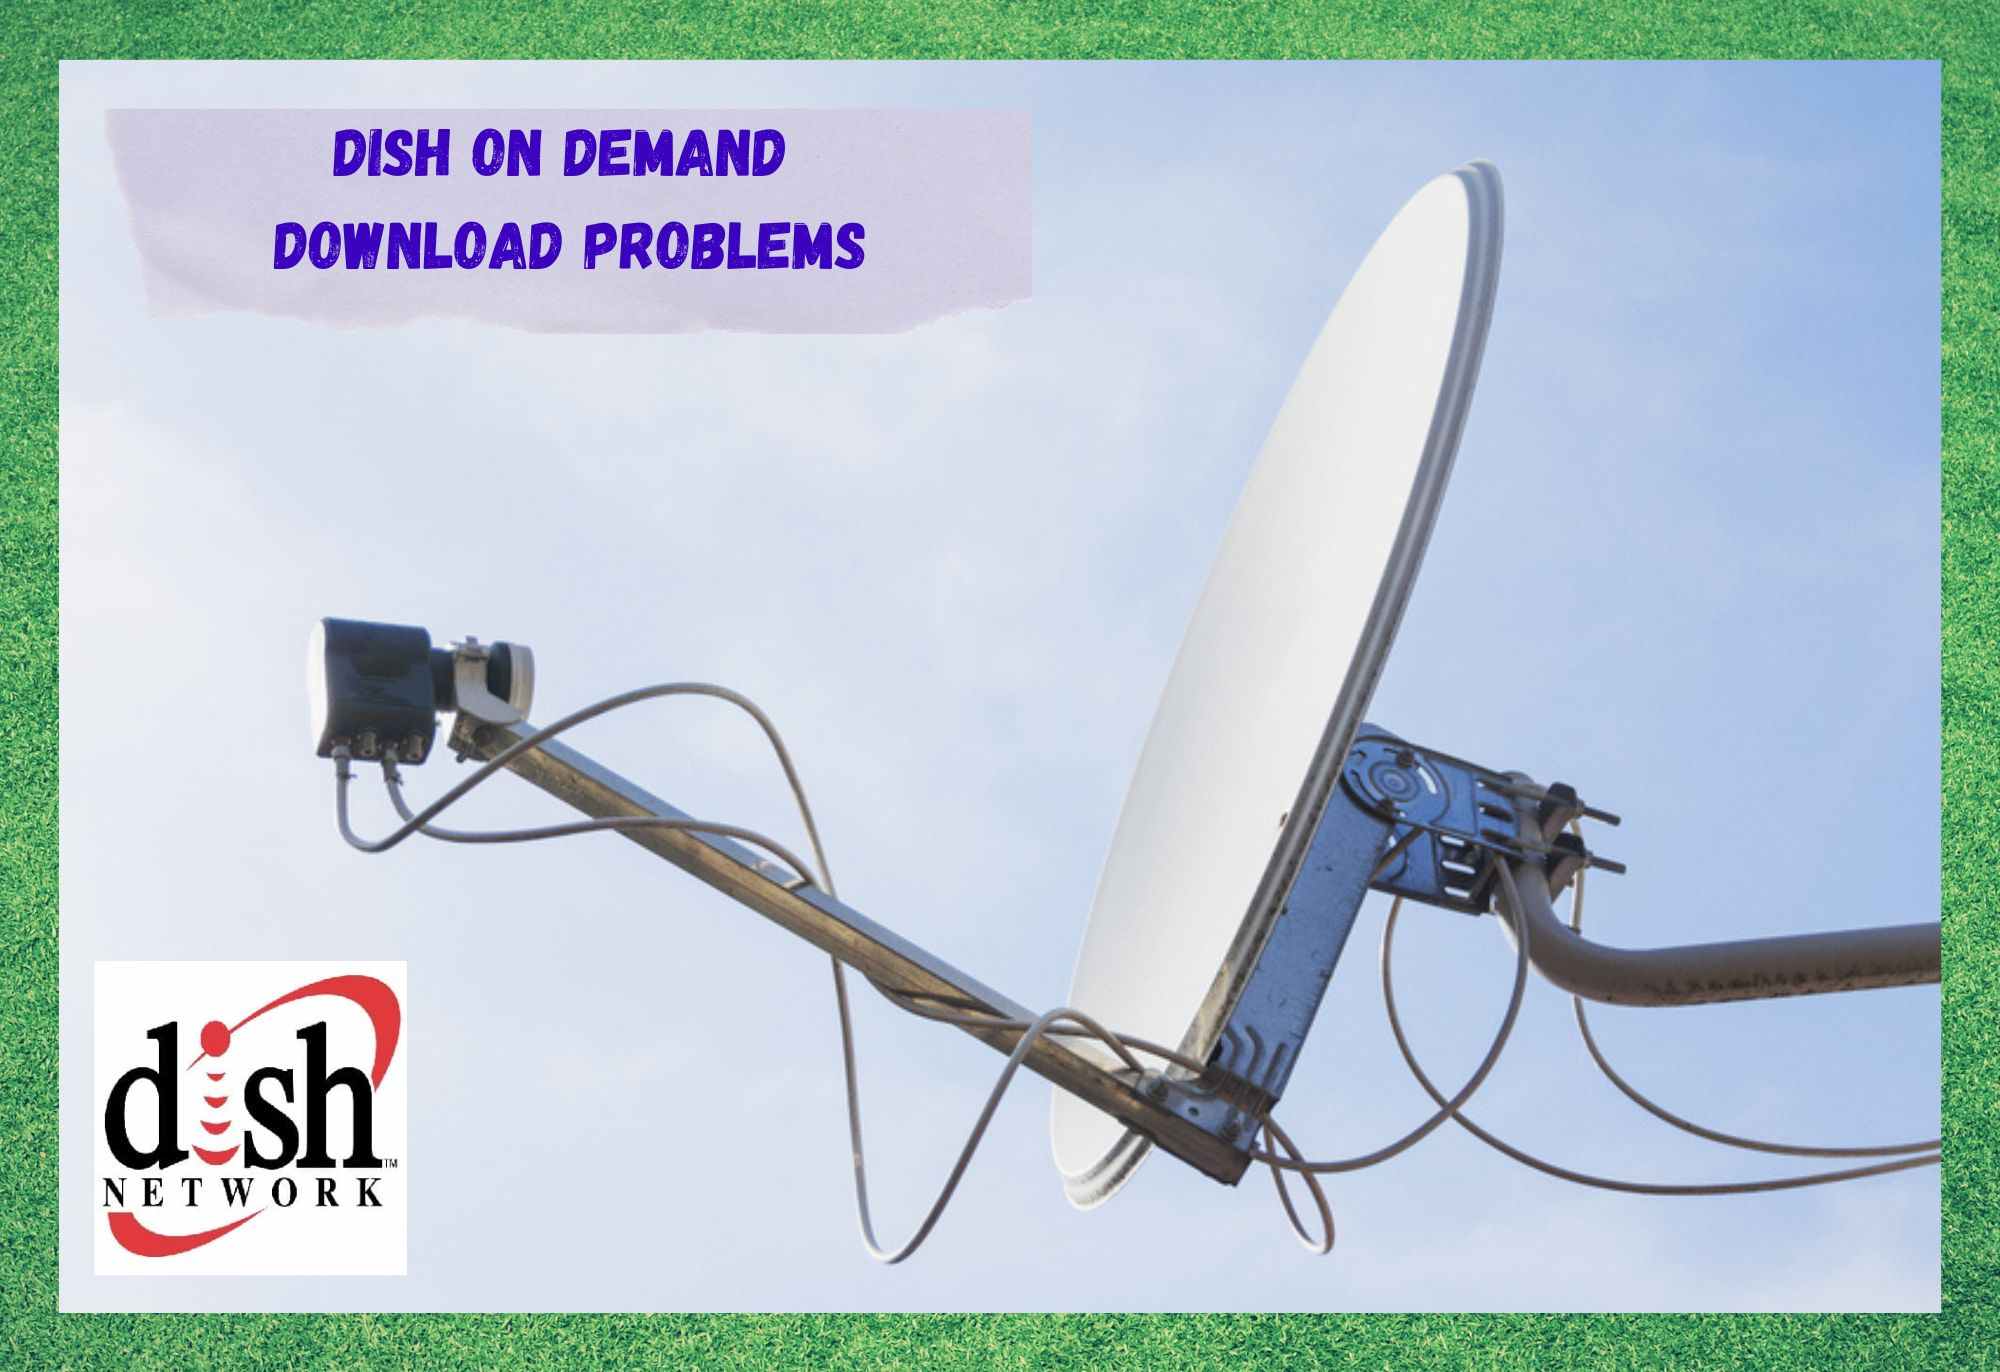 DISH on Demand татаж авах 6 асуудлыг зассан